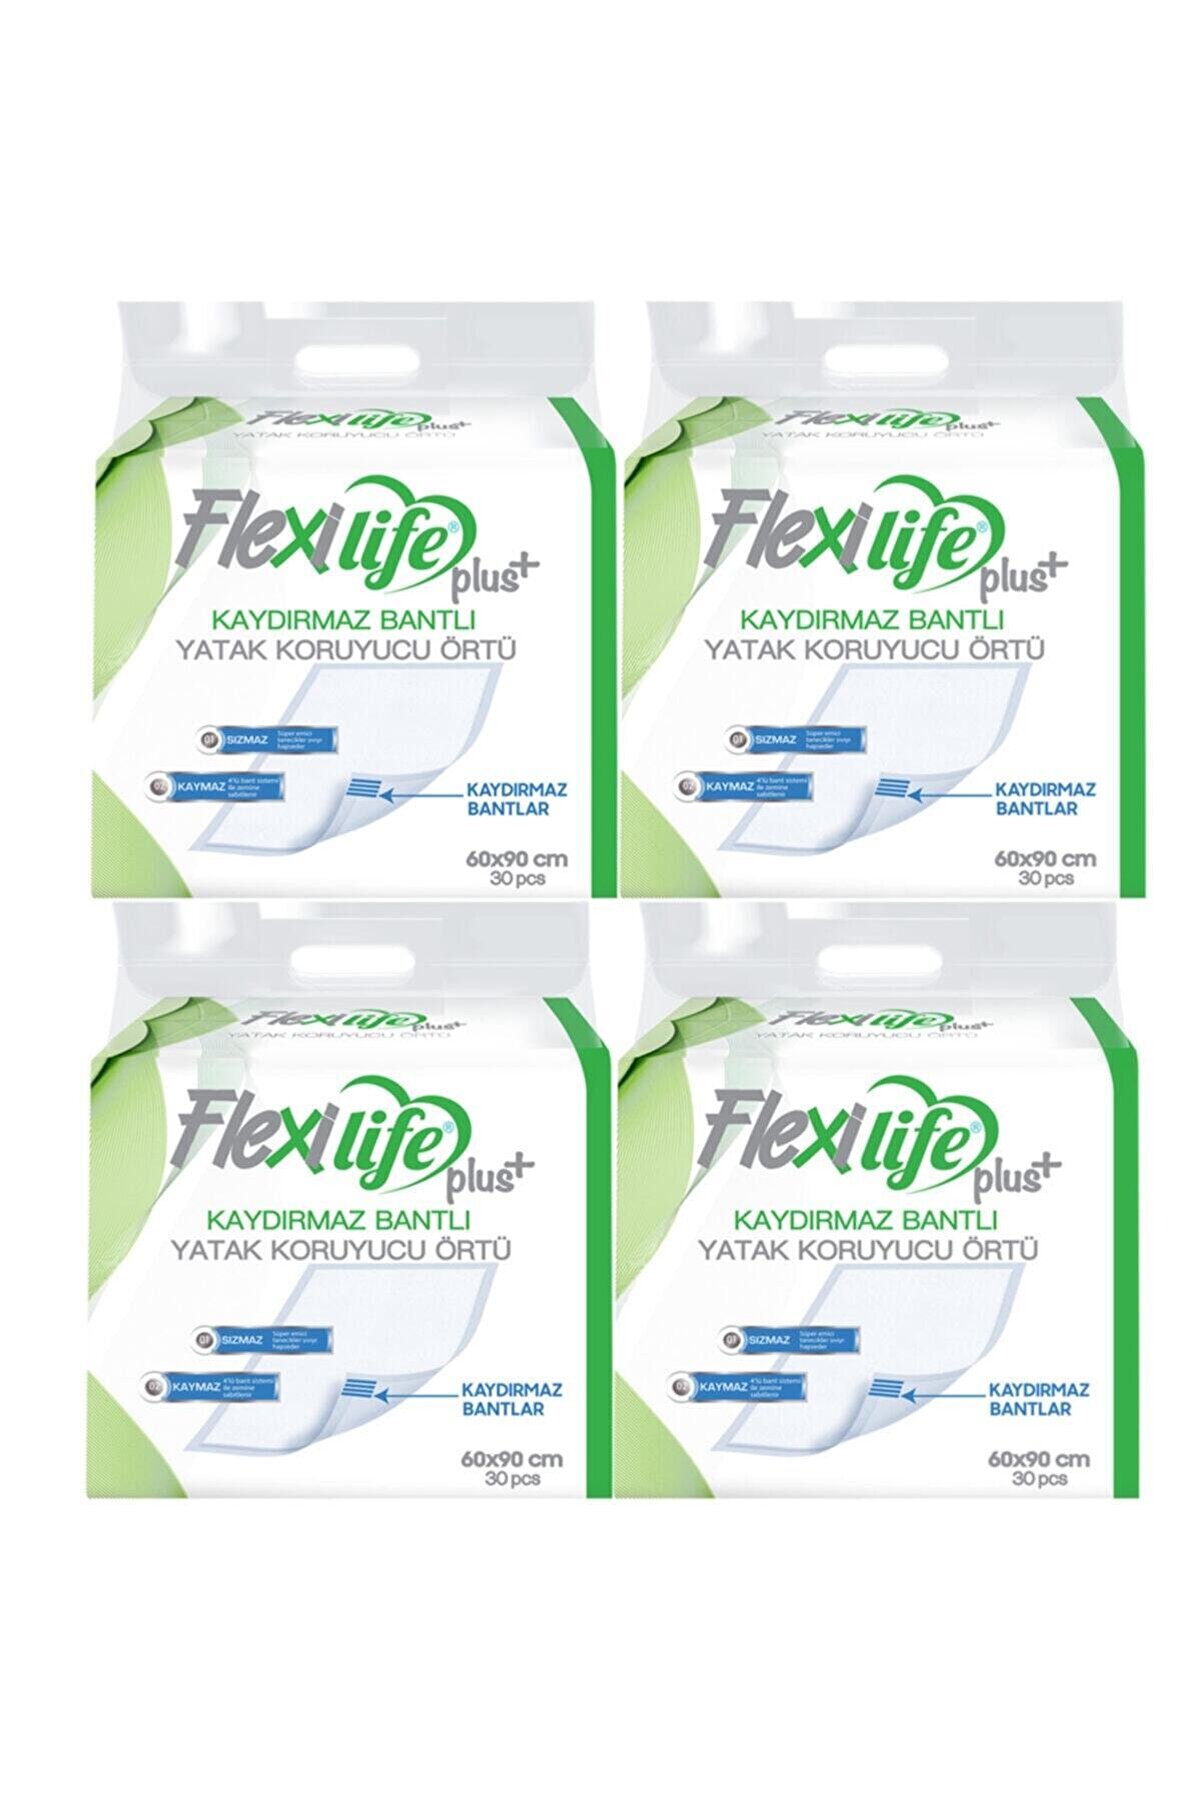 Flexi Life Flexilife Hasta Altı Bezi Kaydırmaz Bantlı Yatak Koruyucu Örtü 60x90 Cm 30 Lu 4 Paket